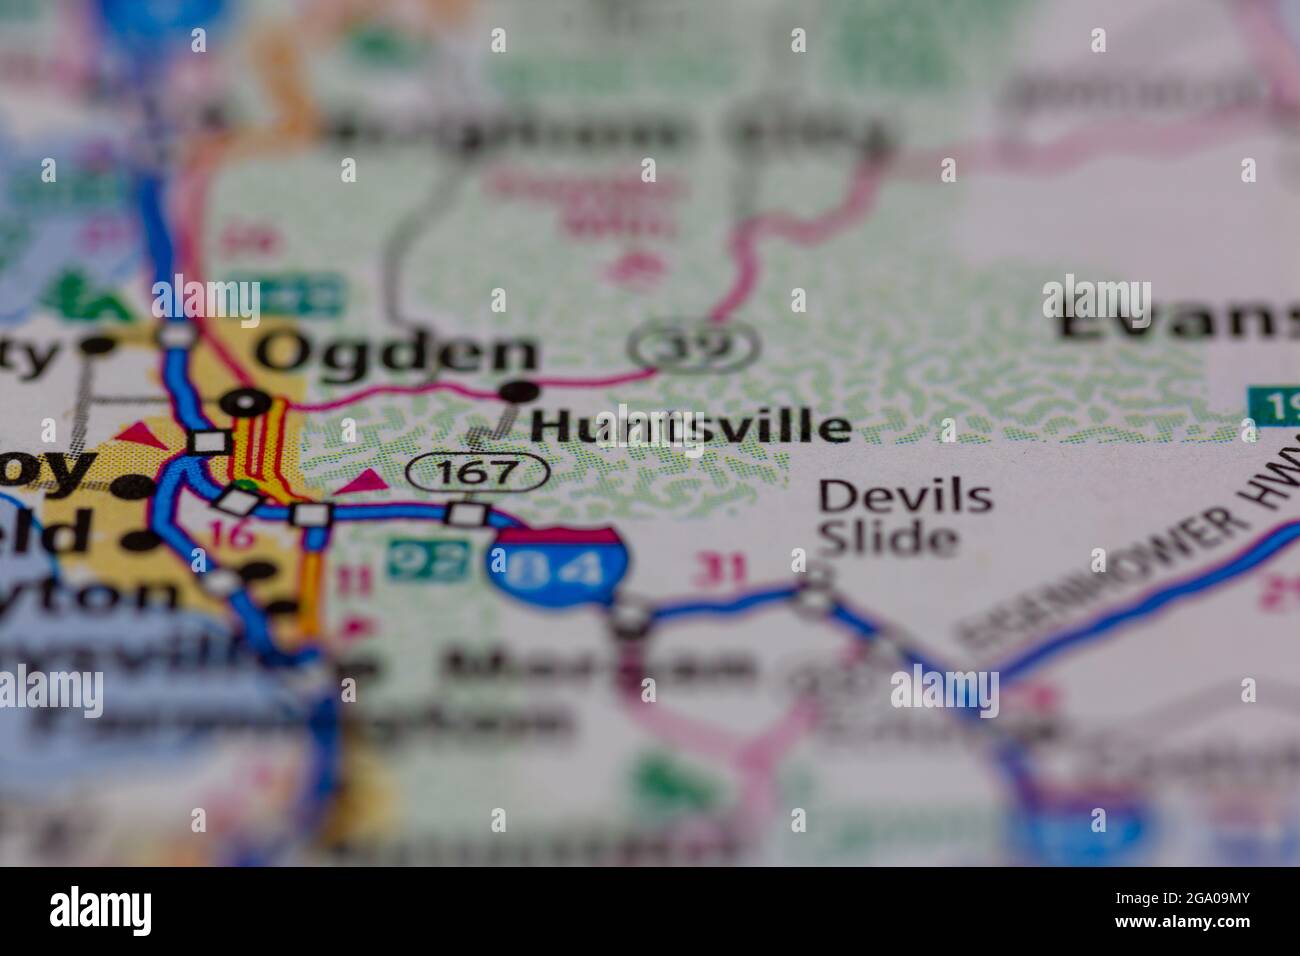 Huntsville Utah USA auf einer Straßenkarte oder Geografie-Karte angezeigt Stockfoto